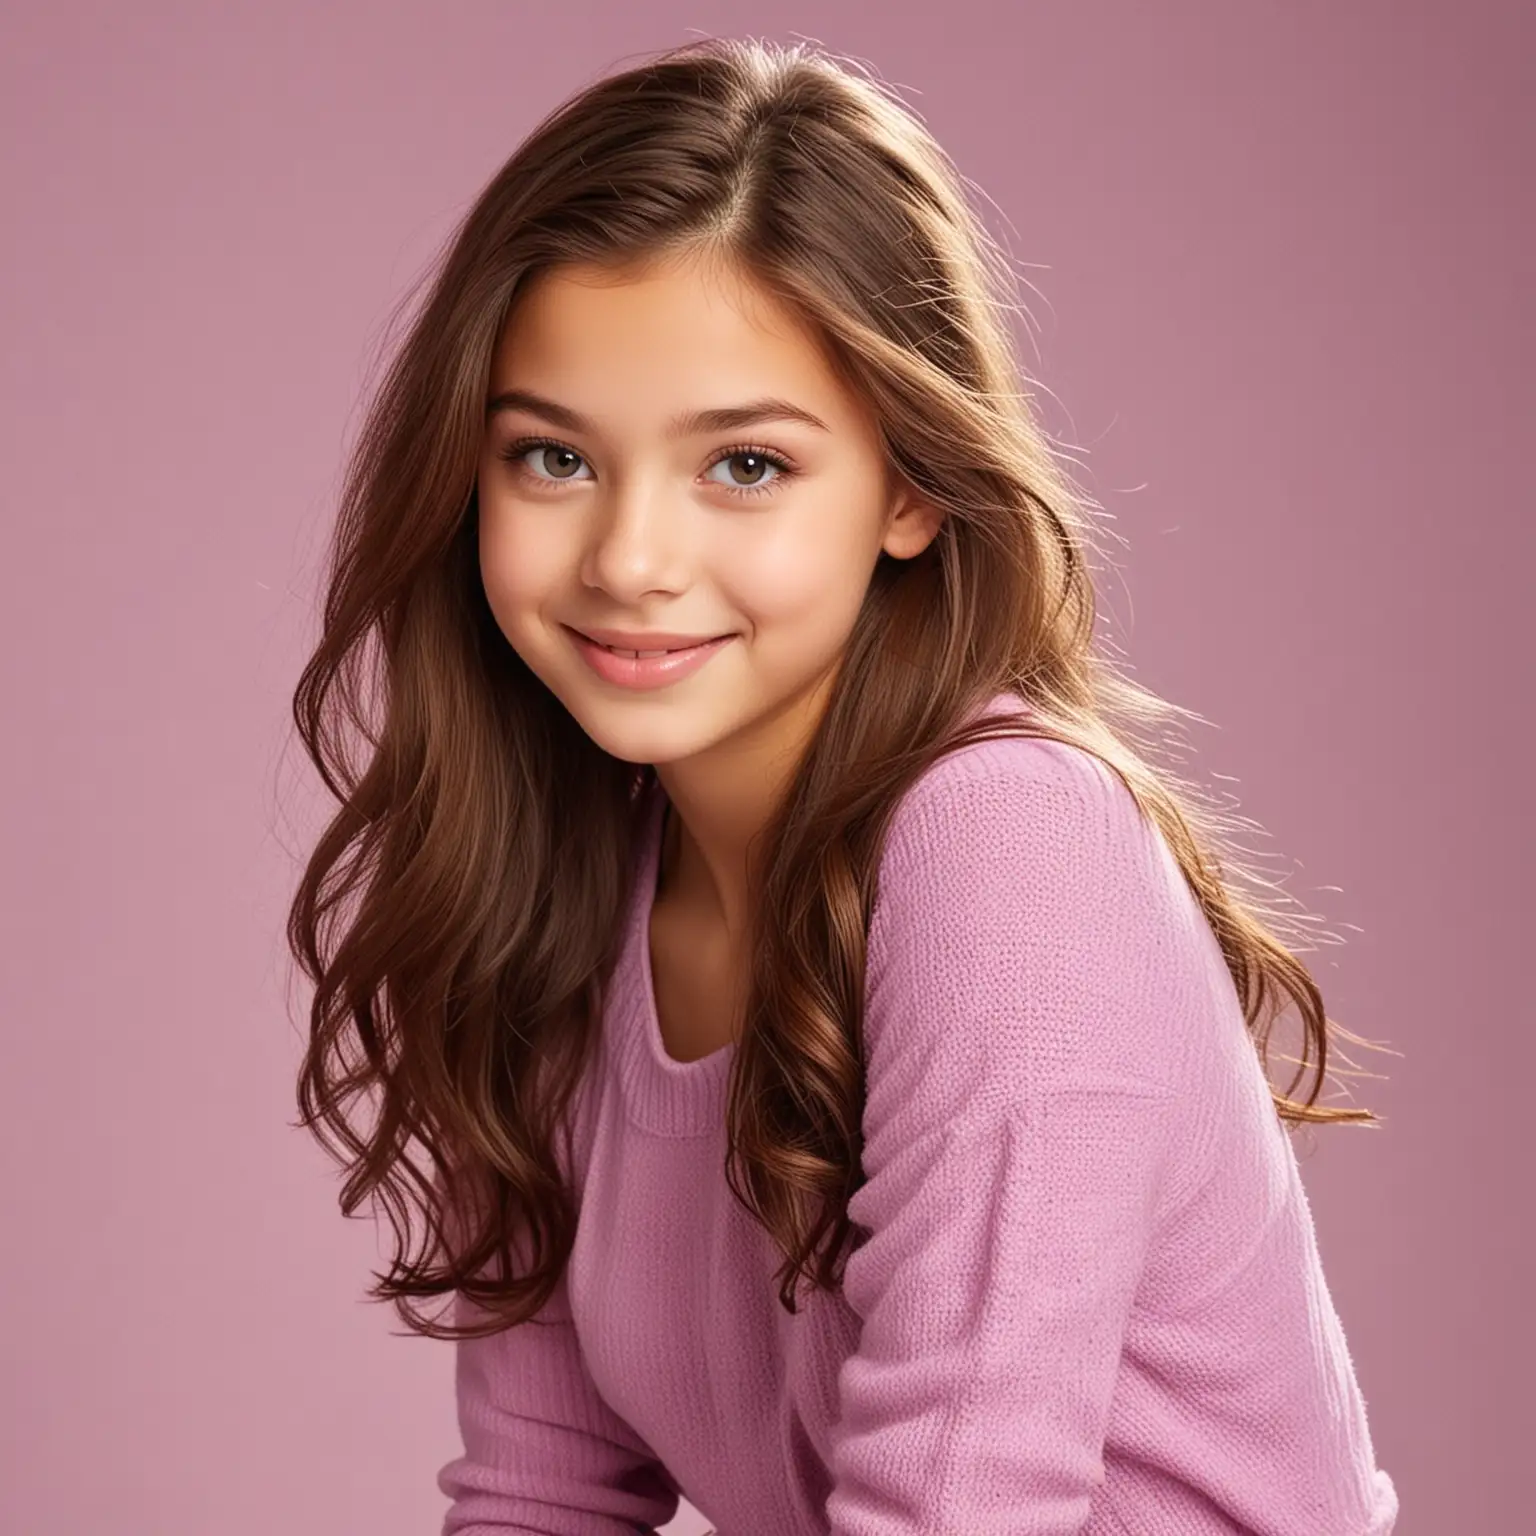 Teen Model Milana Khametova Poses for Disney Channel Shoot